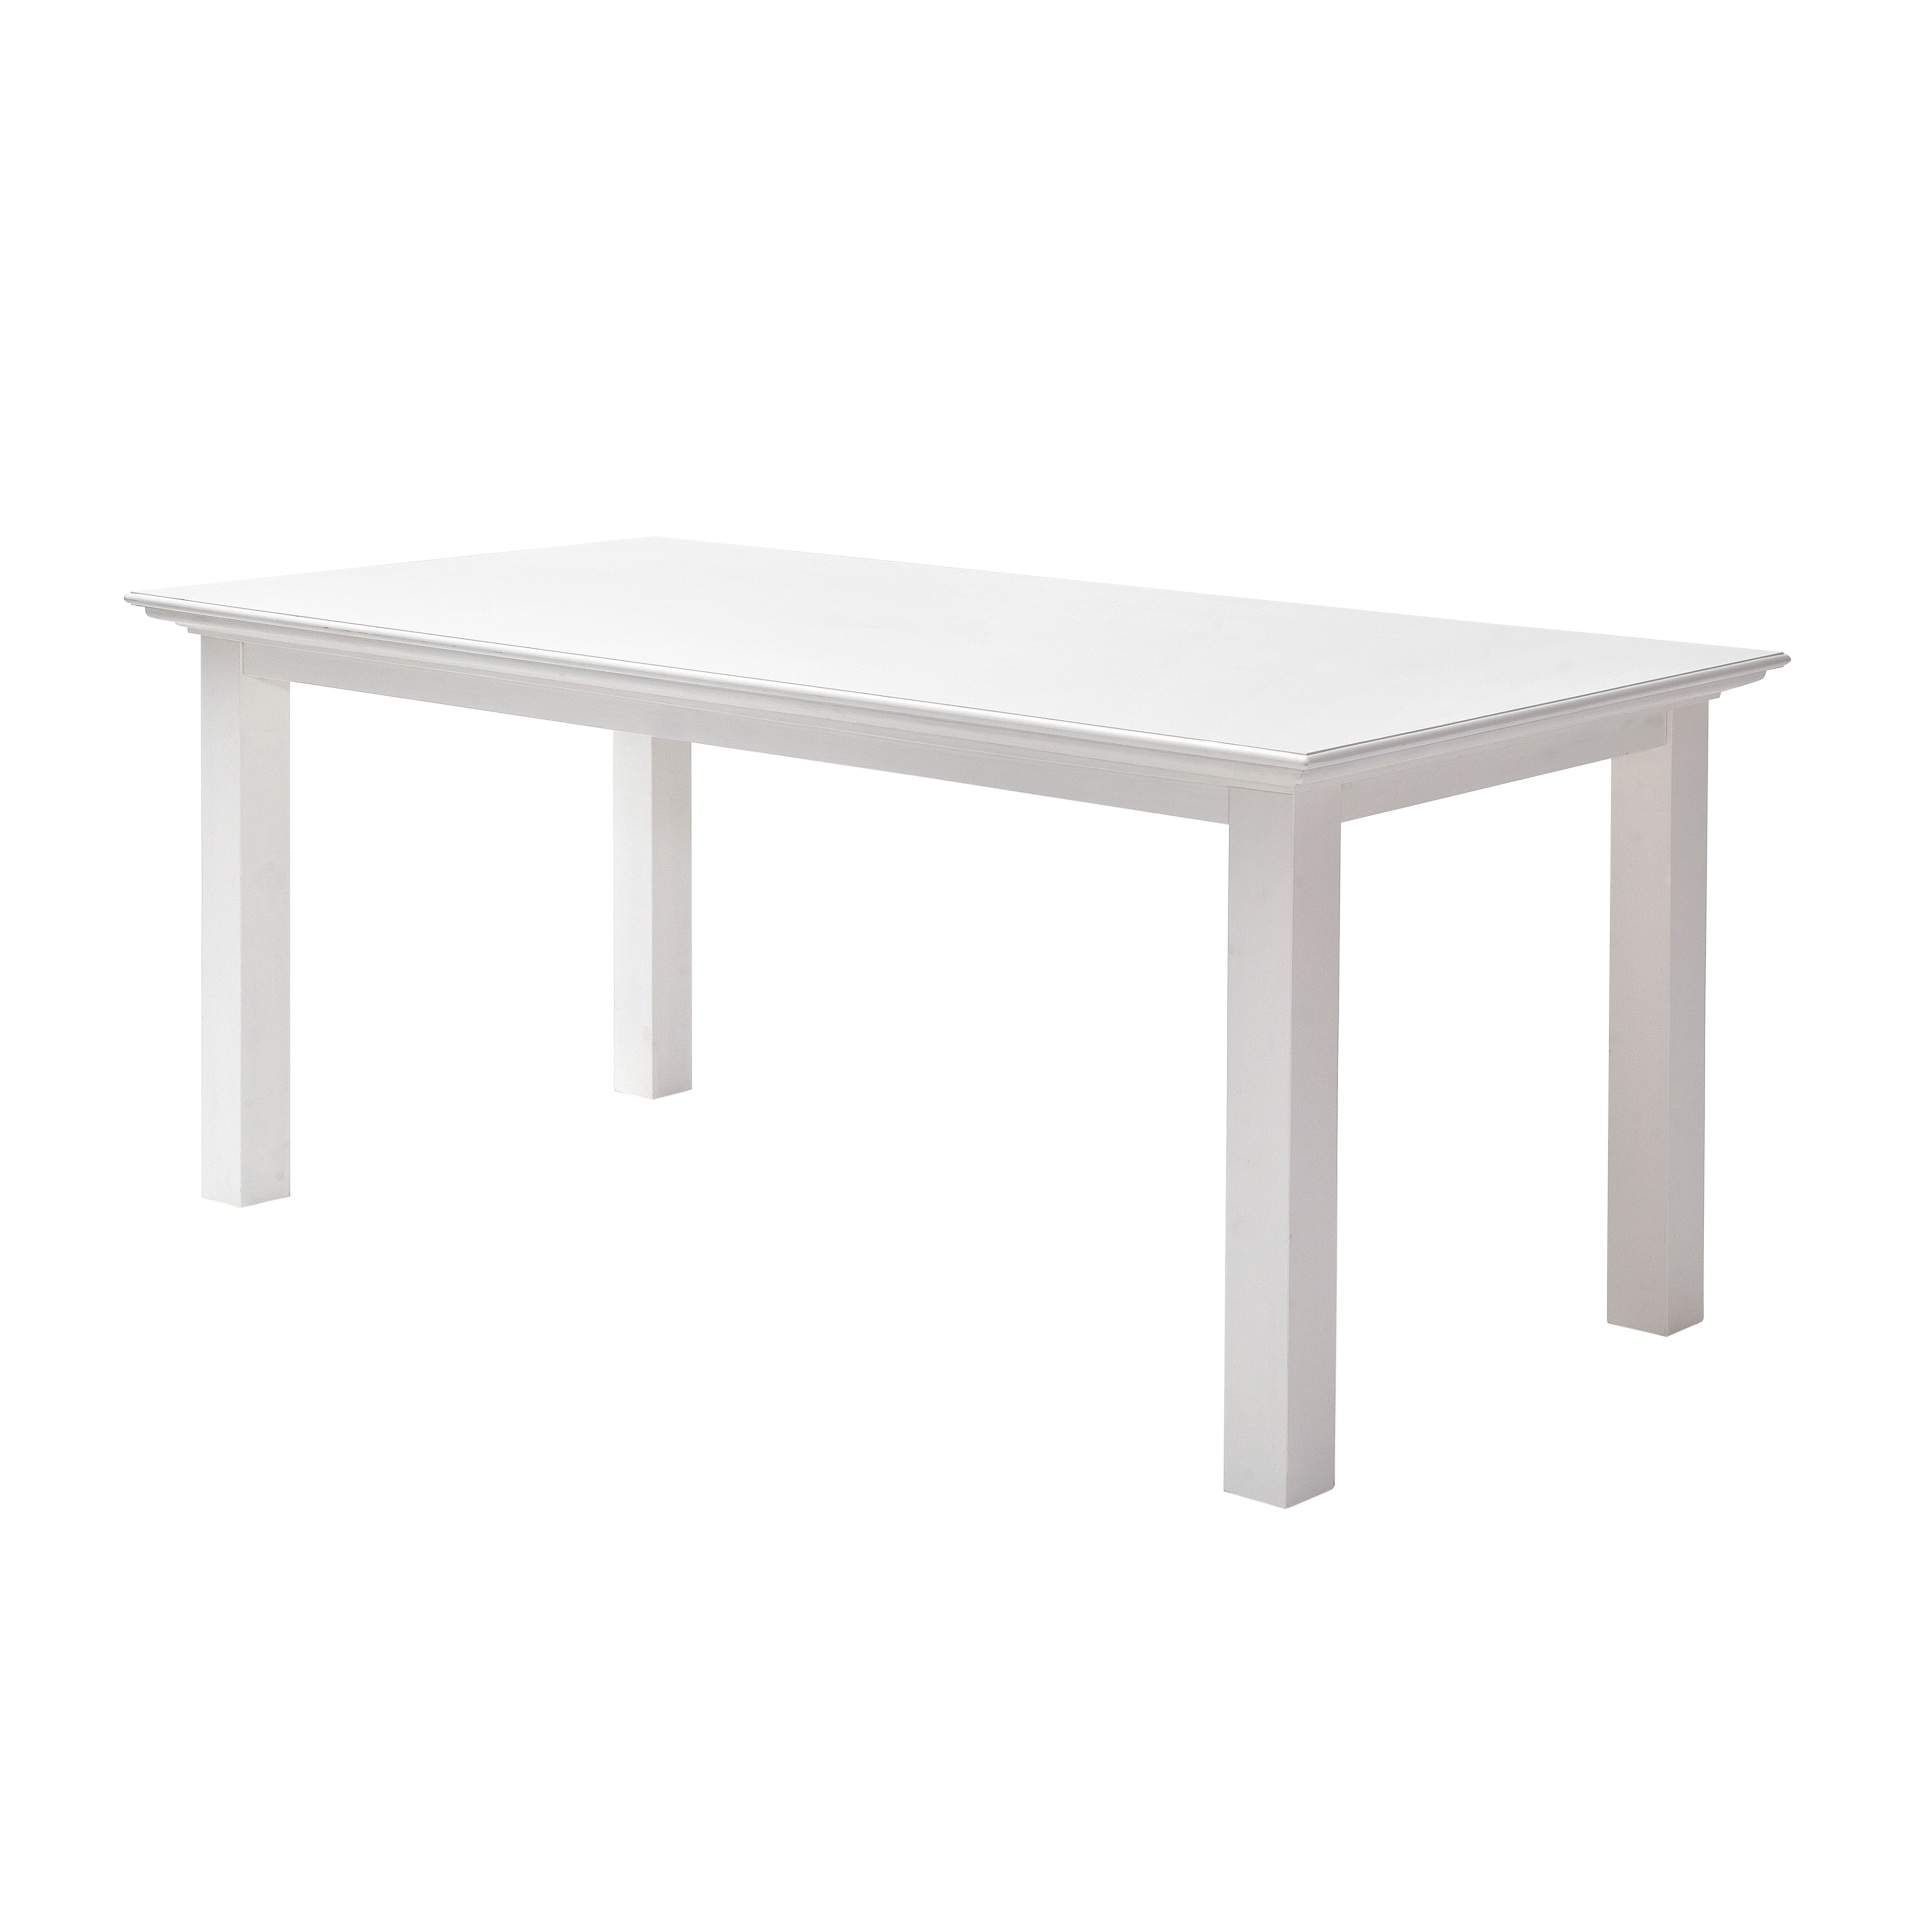 Der Esstisch Halifax überzeugt mit seinem Landhaus Stil. Gefertigt wurde er aus Mahagoni Holz, welches einen weißen Farbton besitzt. Der Tisch besitzt eine Breite von 180 cm.